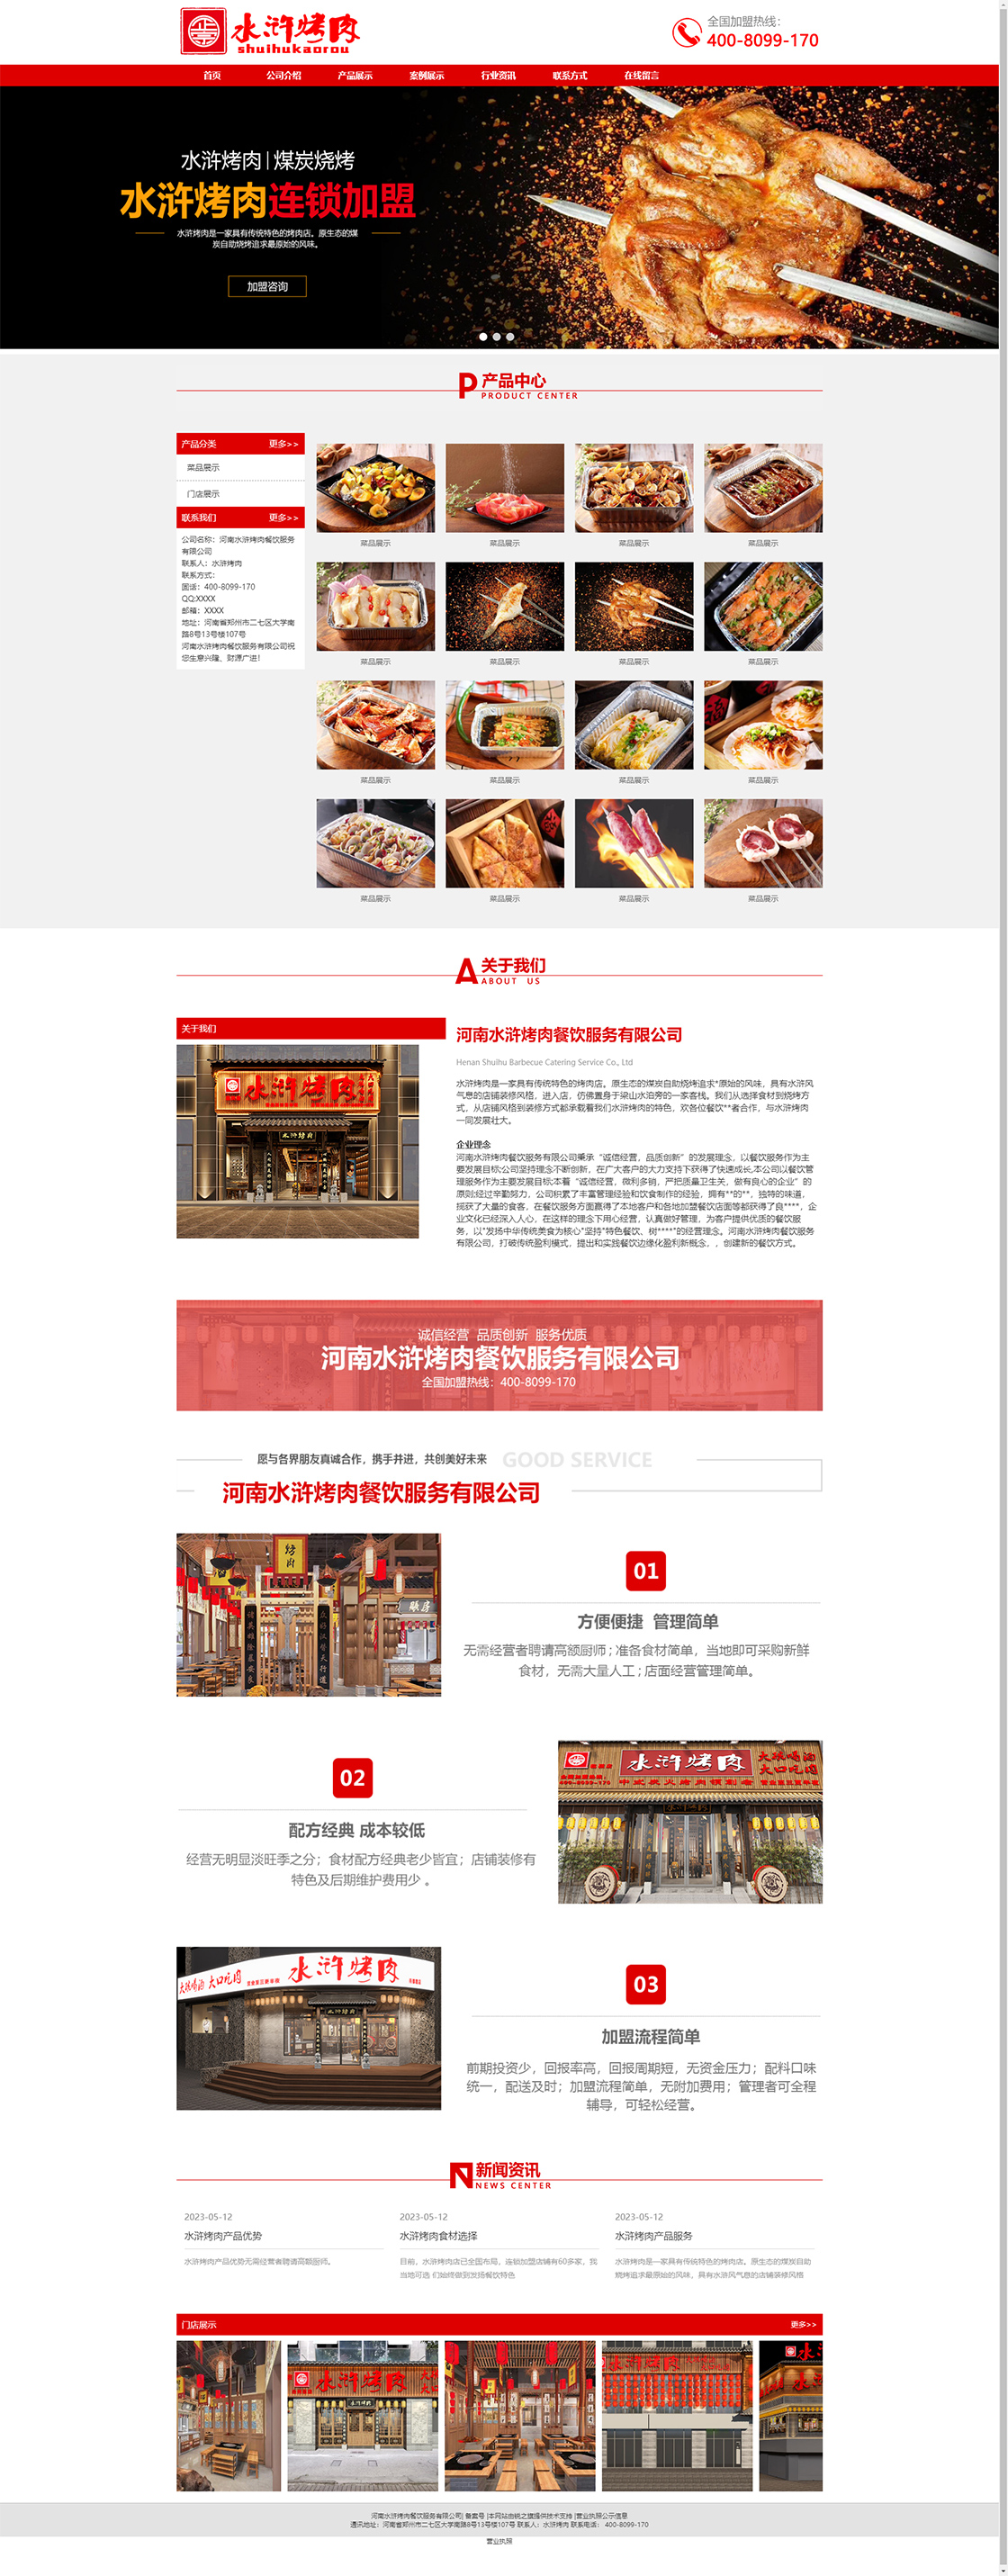 首頁---河南水滸烤肉餐飲服務有限公司.jpg